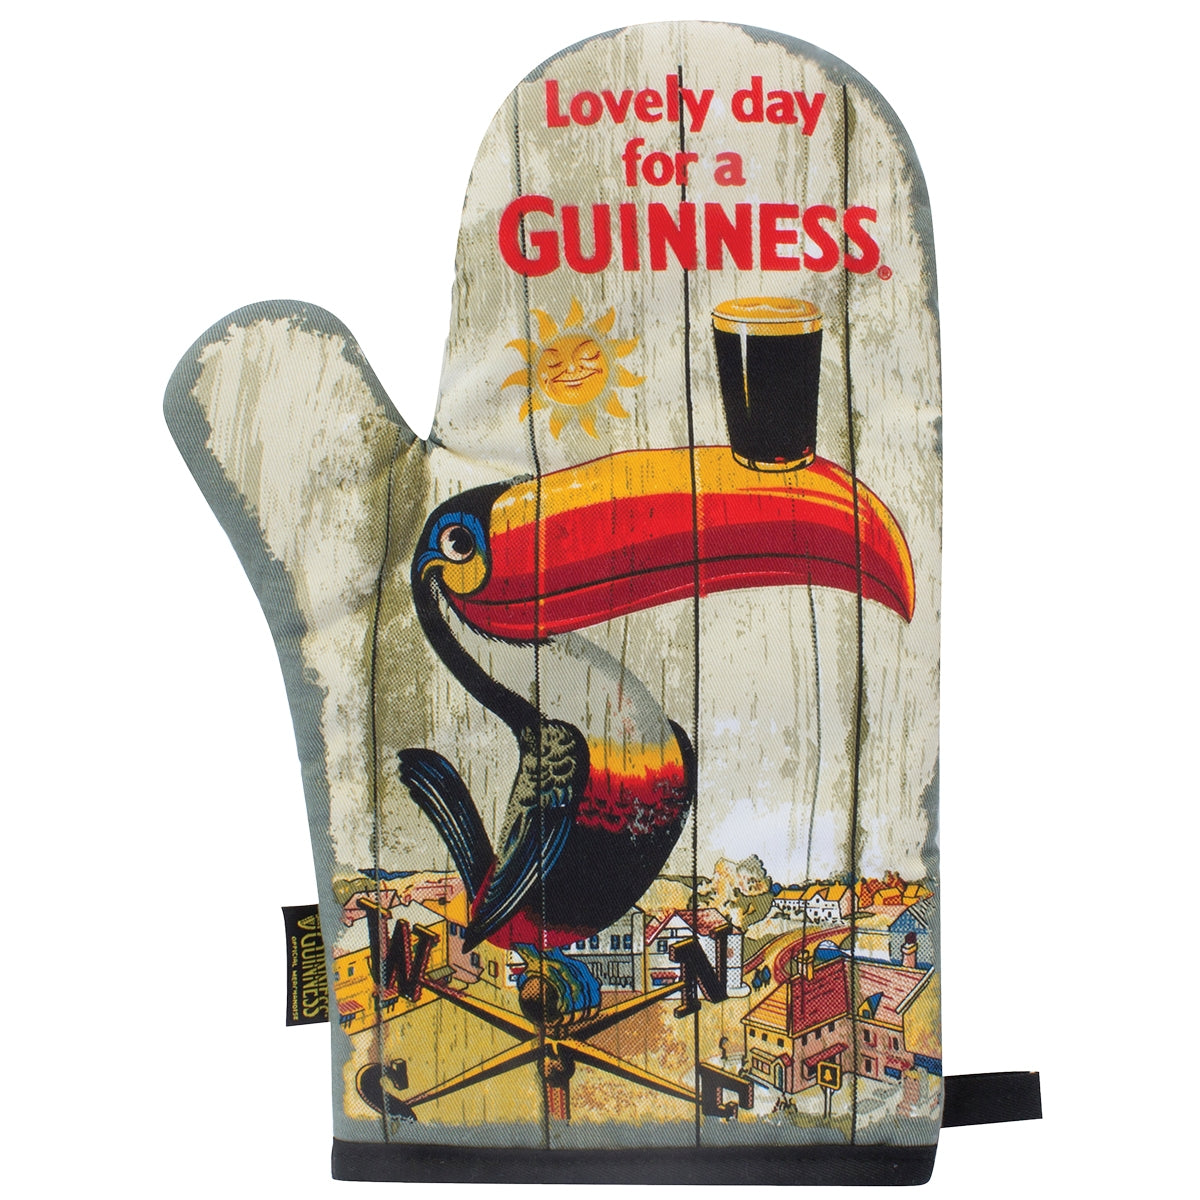 Guinness Nostalgic Toucan Oven Glove